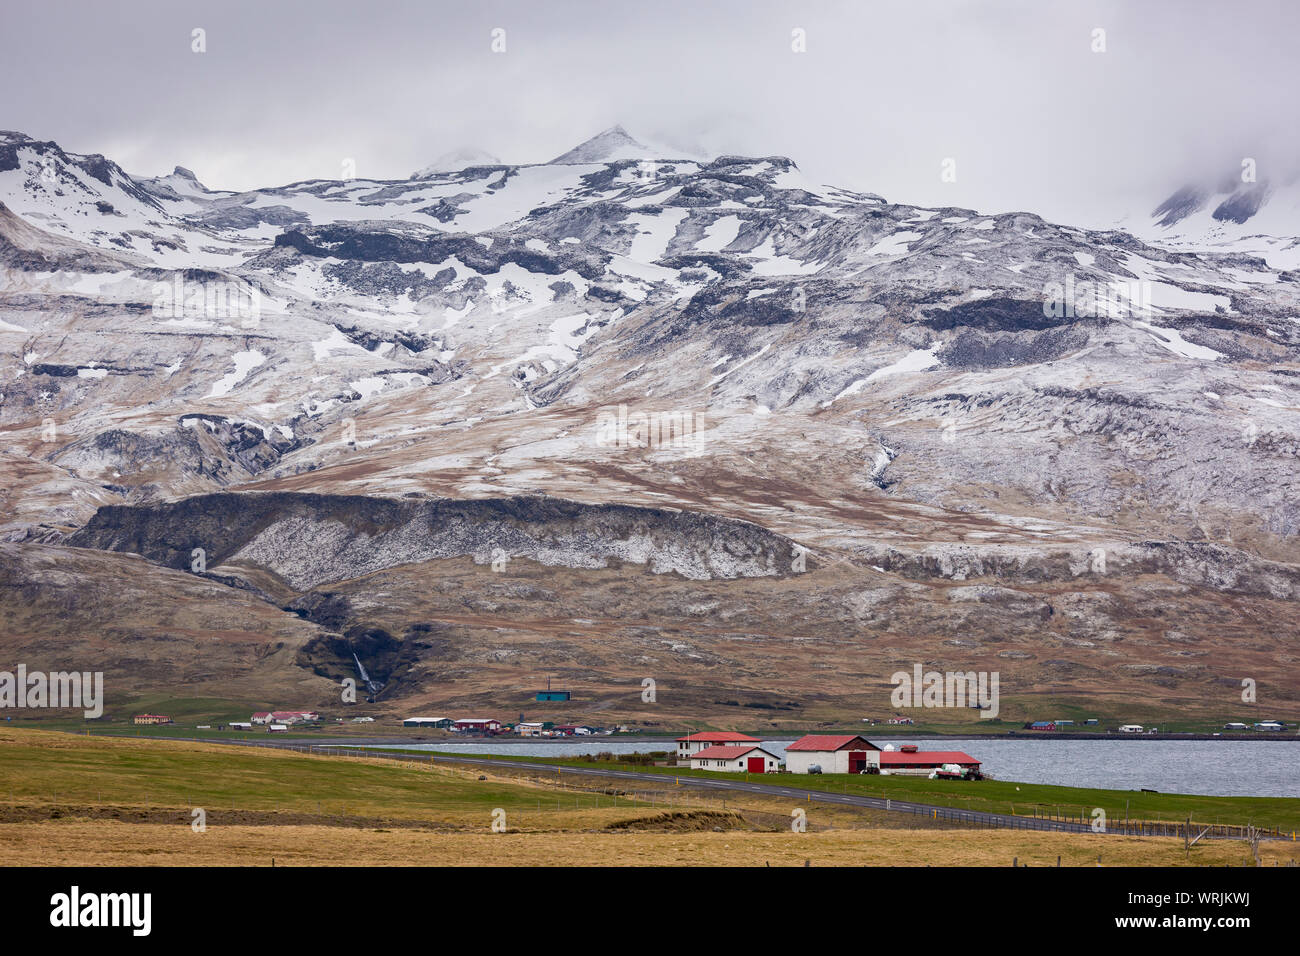 GRUNDARFJOROUR, ISLANDE - paysage de montagne, péninsule de Snæfellsnes. Banque D'Images